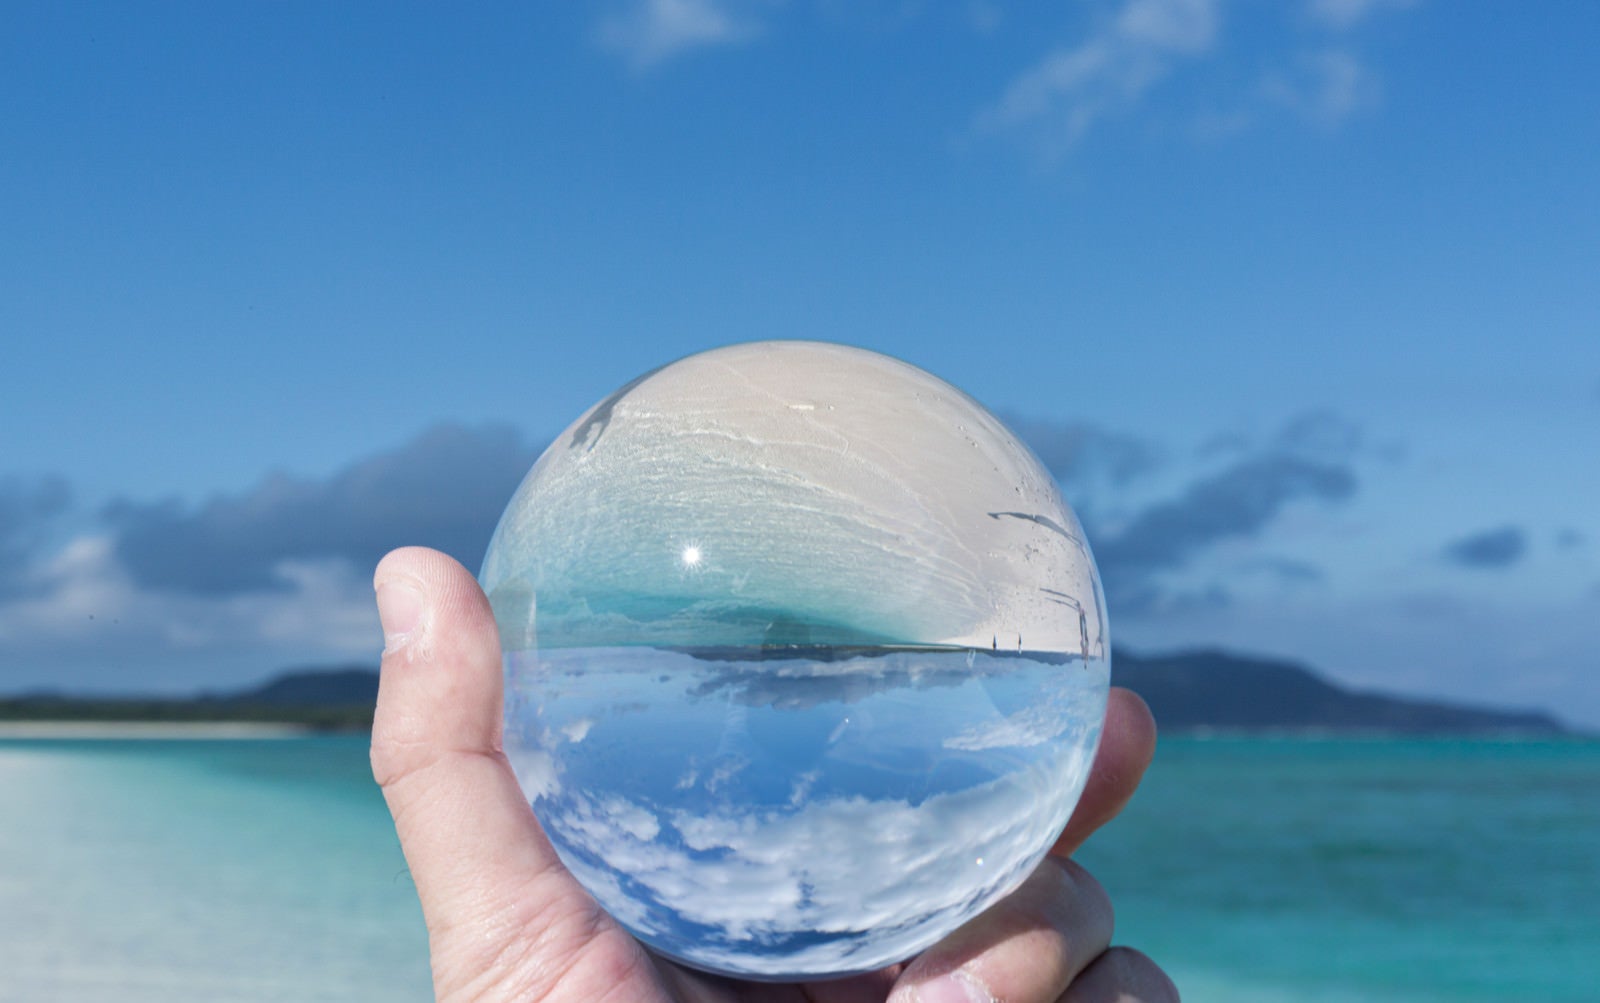 「水晶玉に反転して映り込む南国の海」の写真